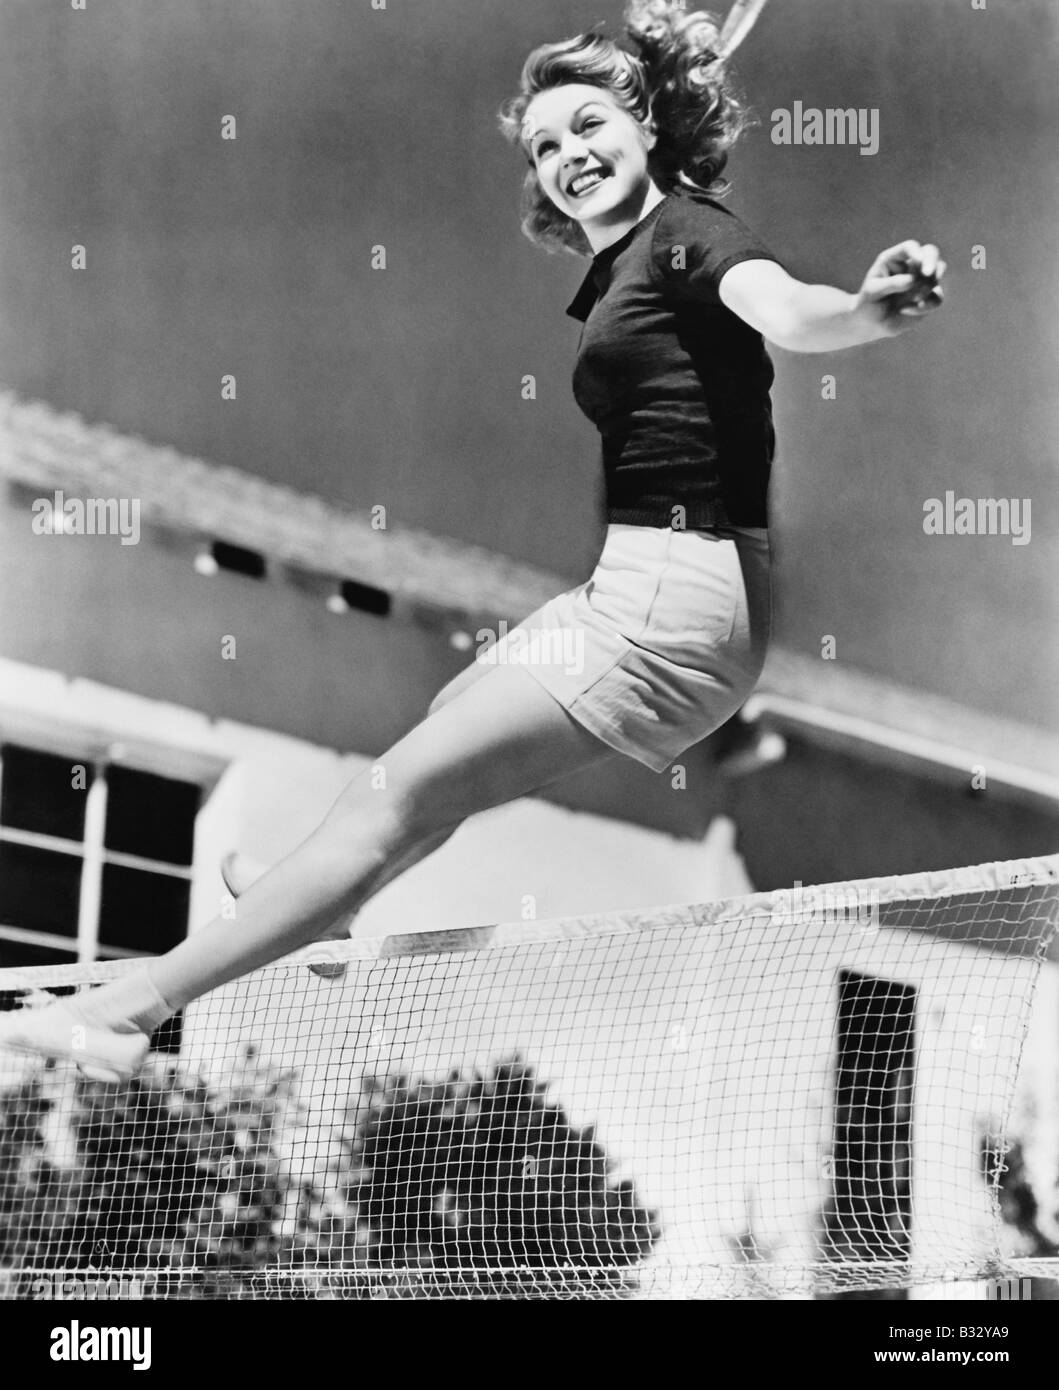 Frau, die über ein Tennis net springen Stockfoto